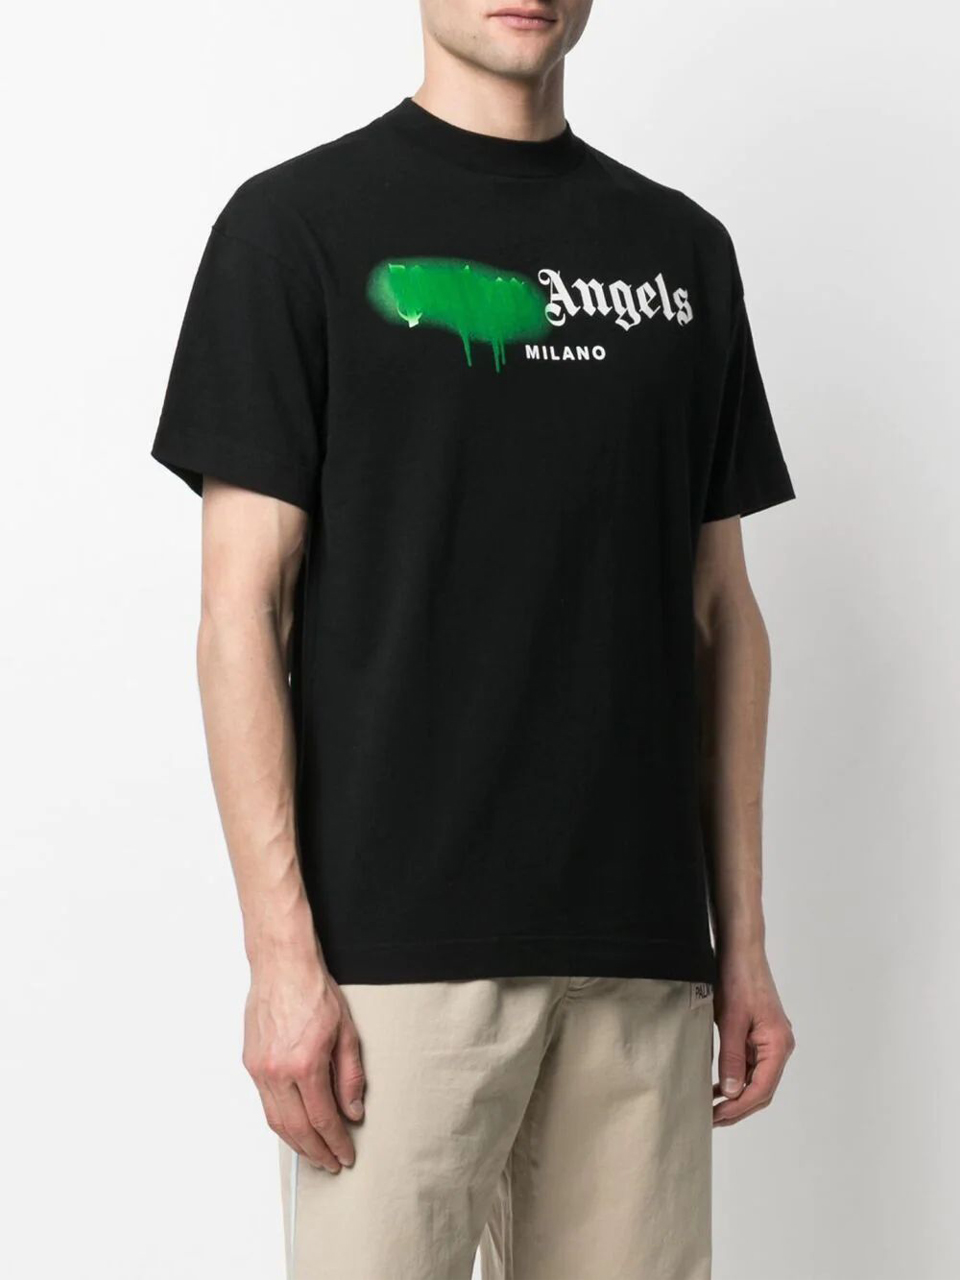 Camiseta Palm Angels Preta Milano com Logo - SuaGrife